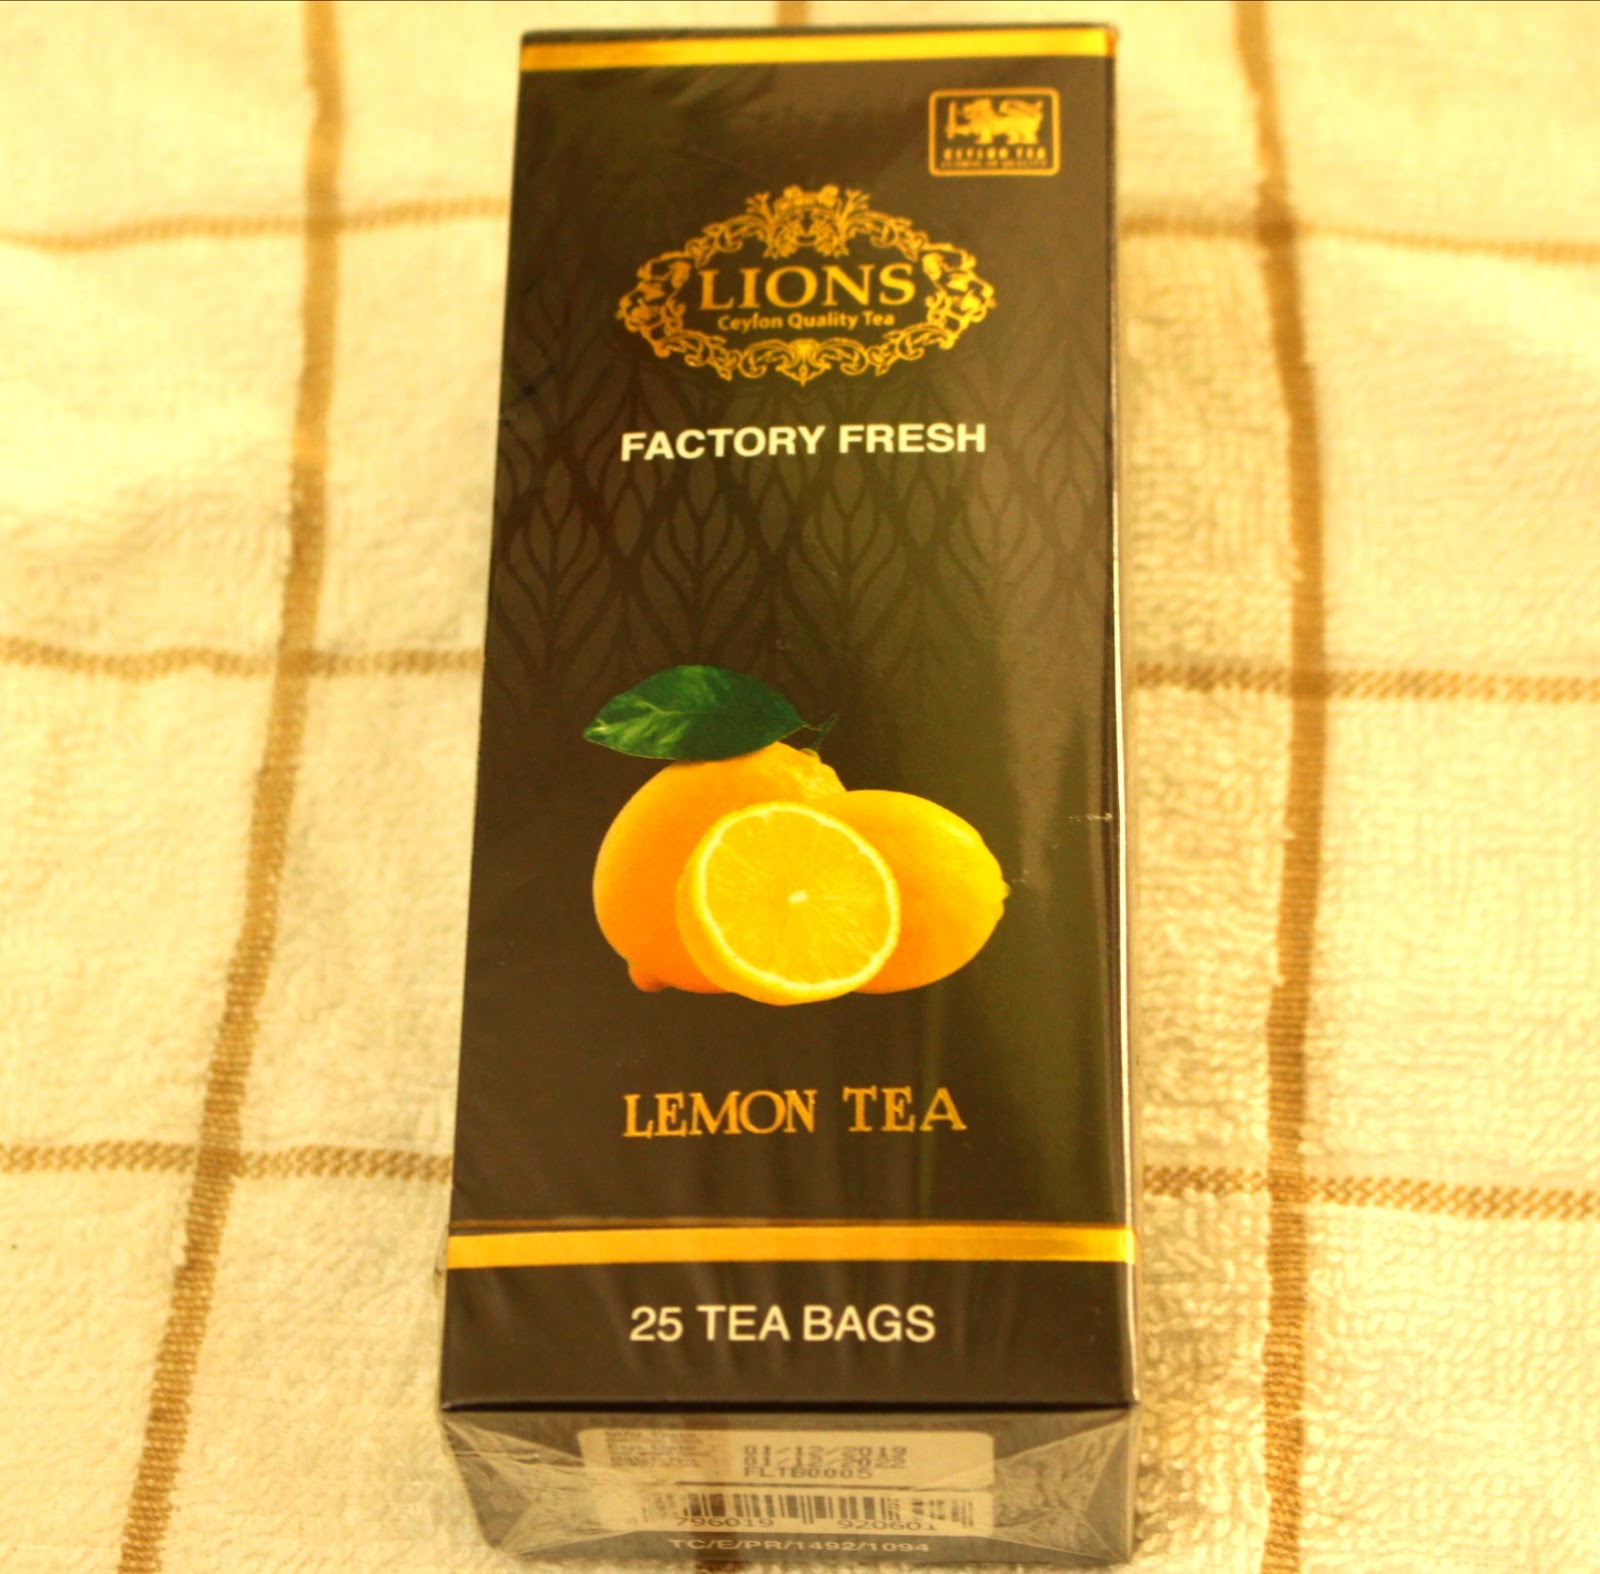 Pure Ceylon Lions Black Tea with Lemon Flavor 25 Tea Bags 50g | eBay